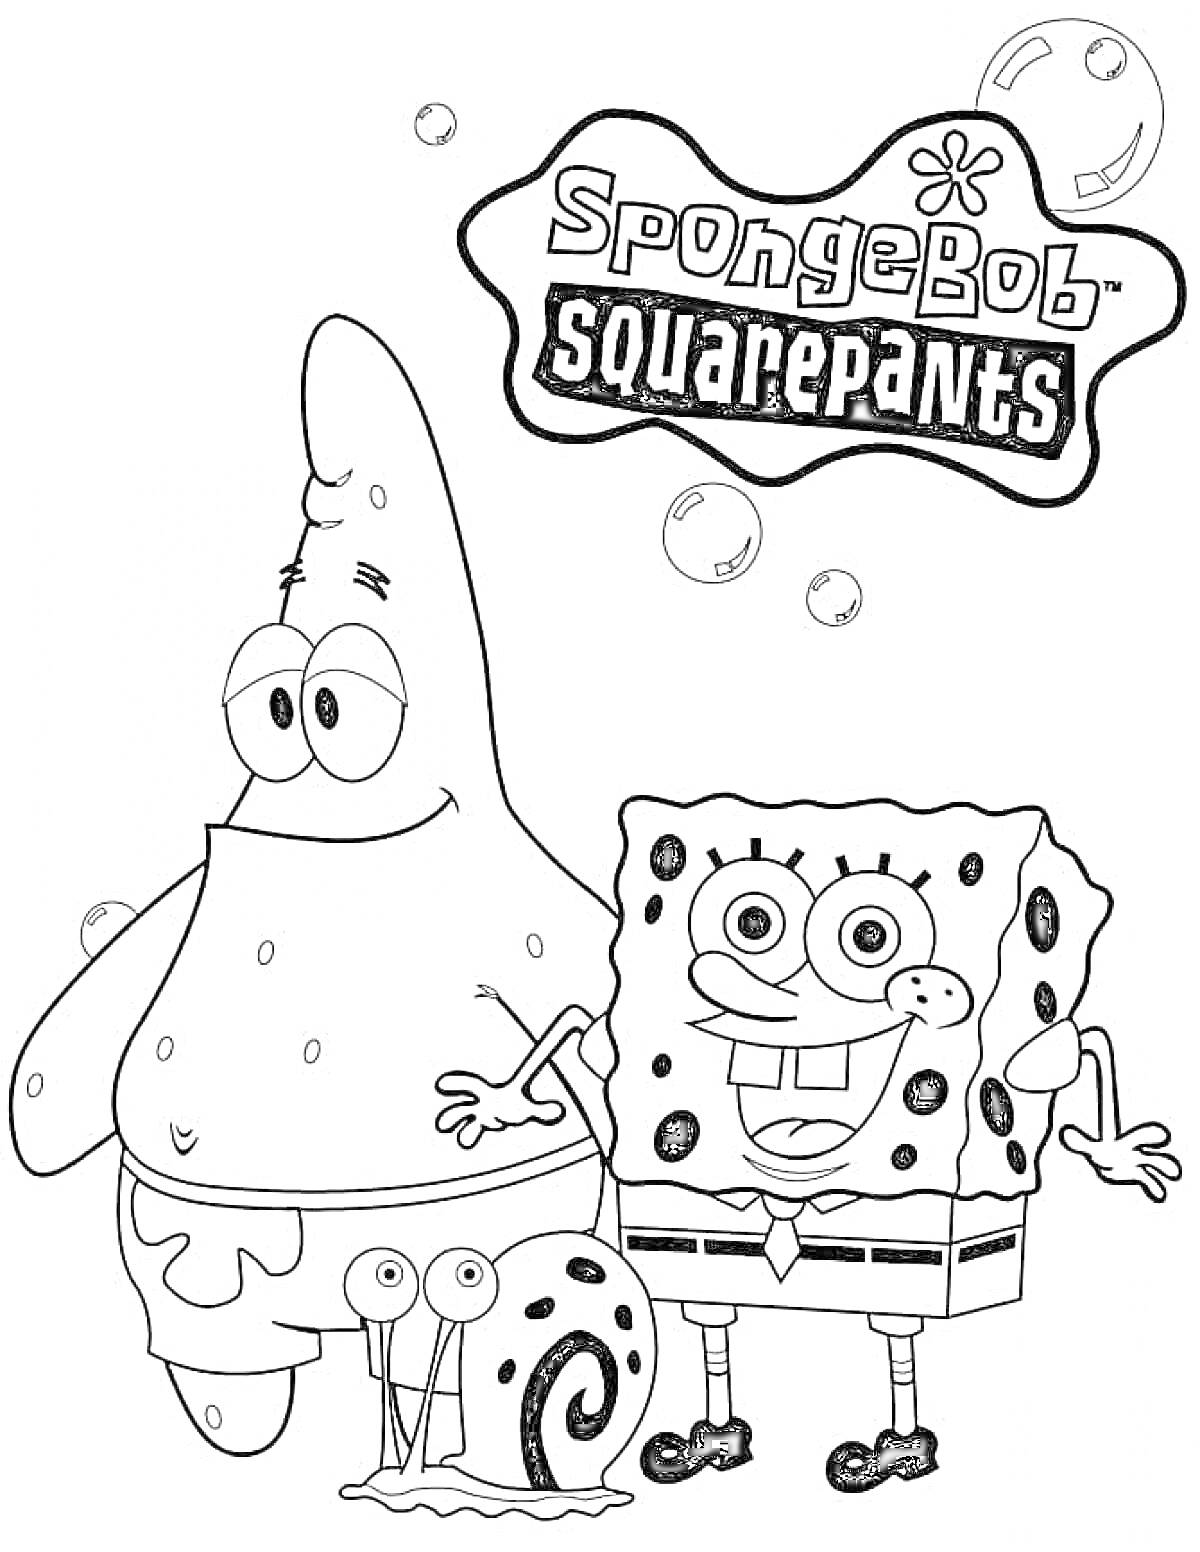 Раскраска Спанч Боб с Патриком и улиткой Гэри, пузырьки, логотип Спанч Боба